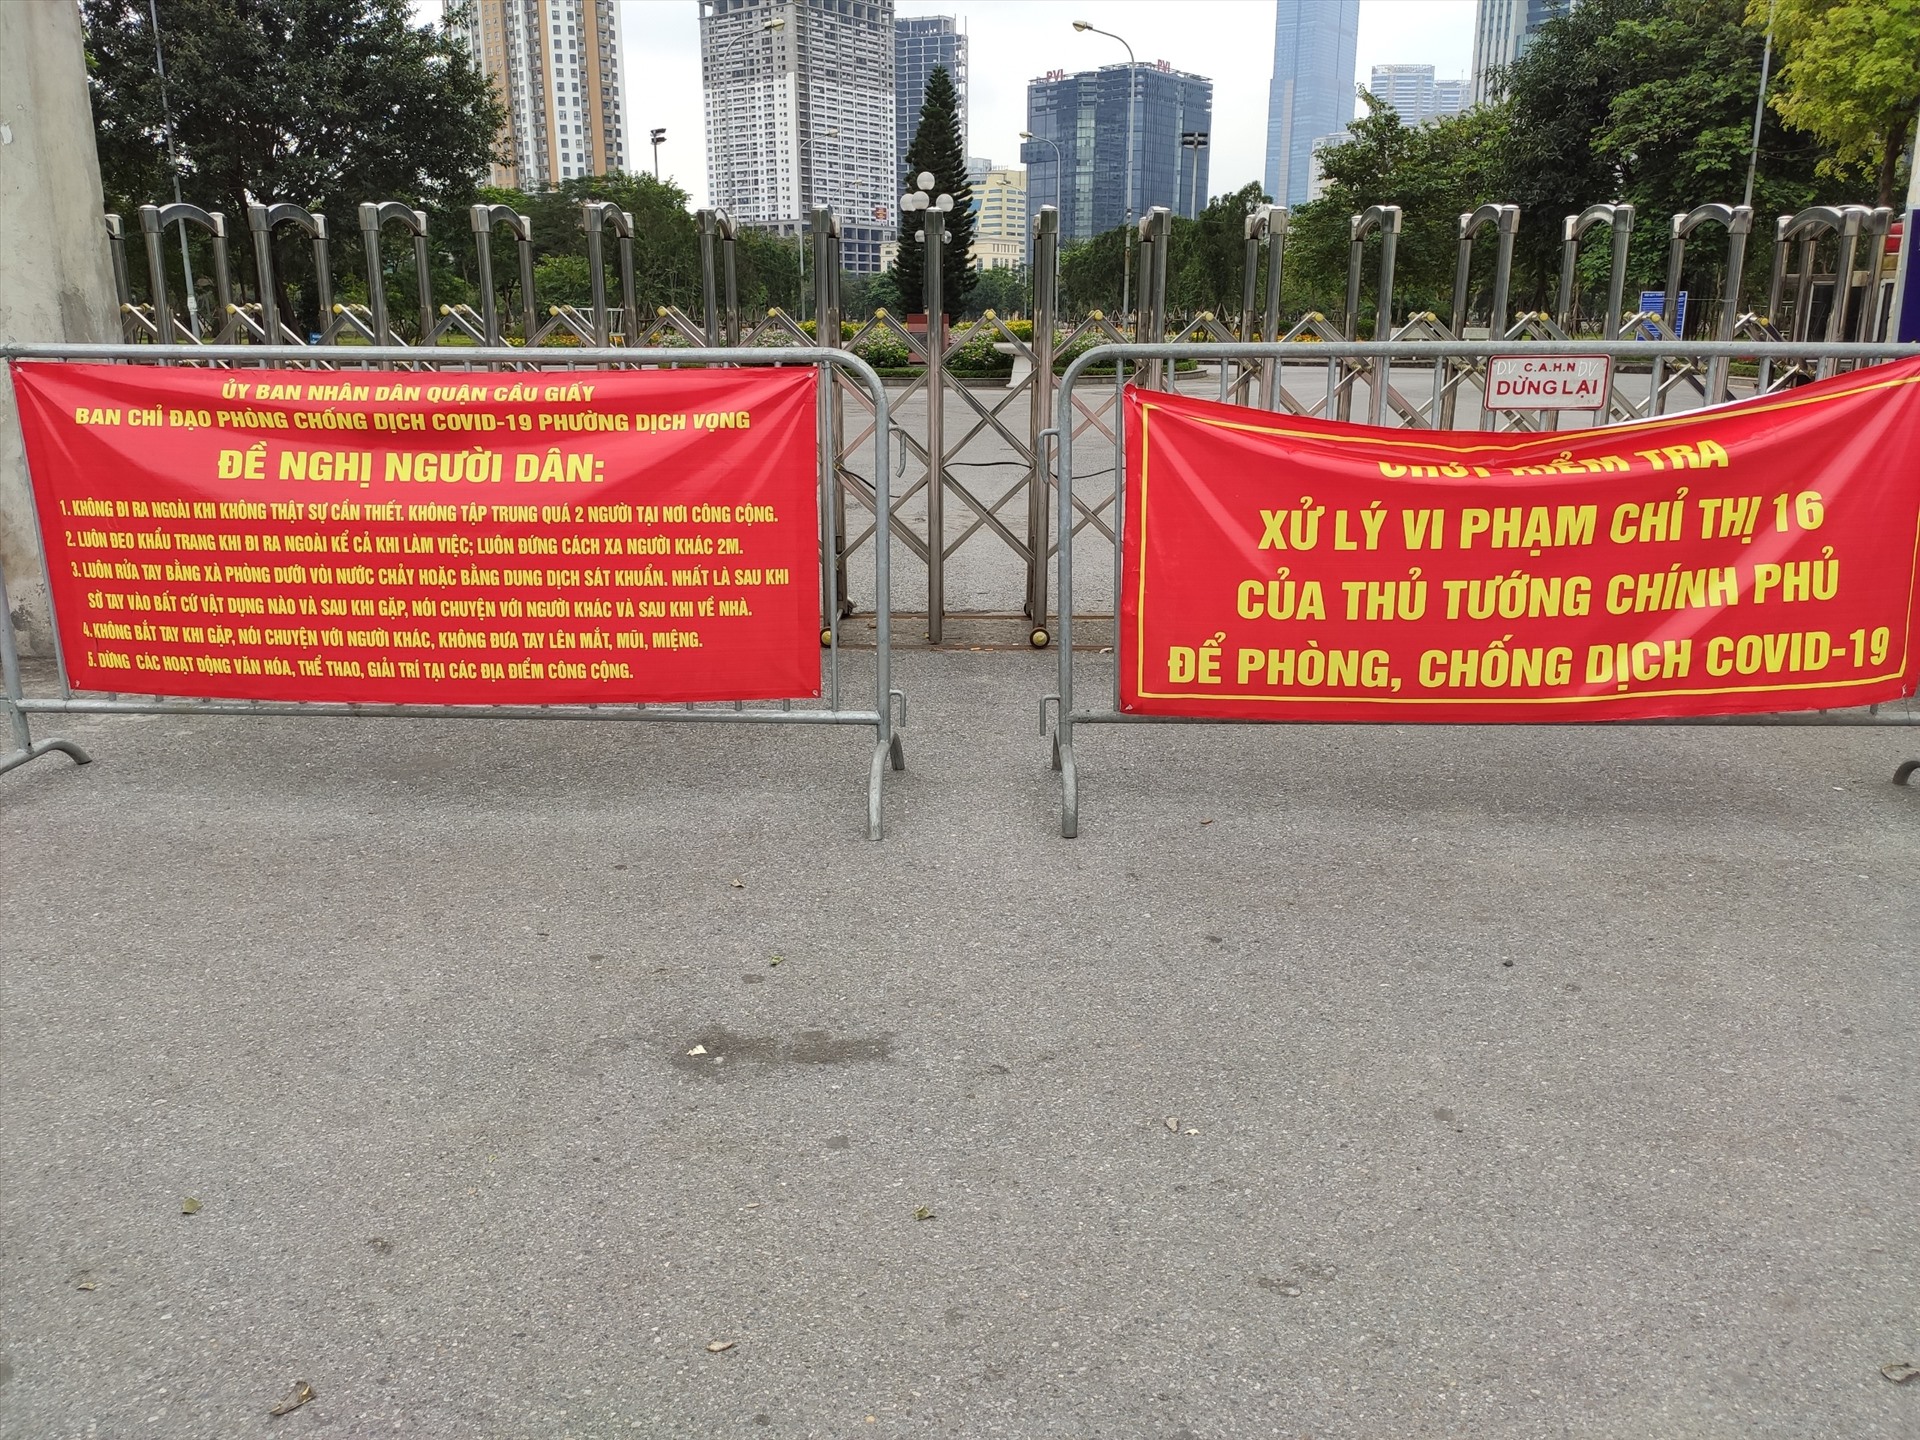 Trước cổng công viên vẫn đặt những thông báo về phòng chống dịch COVID-19, tránh sự chủ quan của người dân.